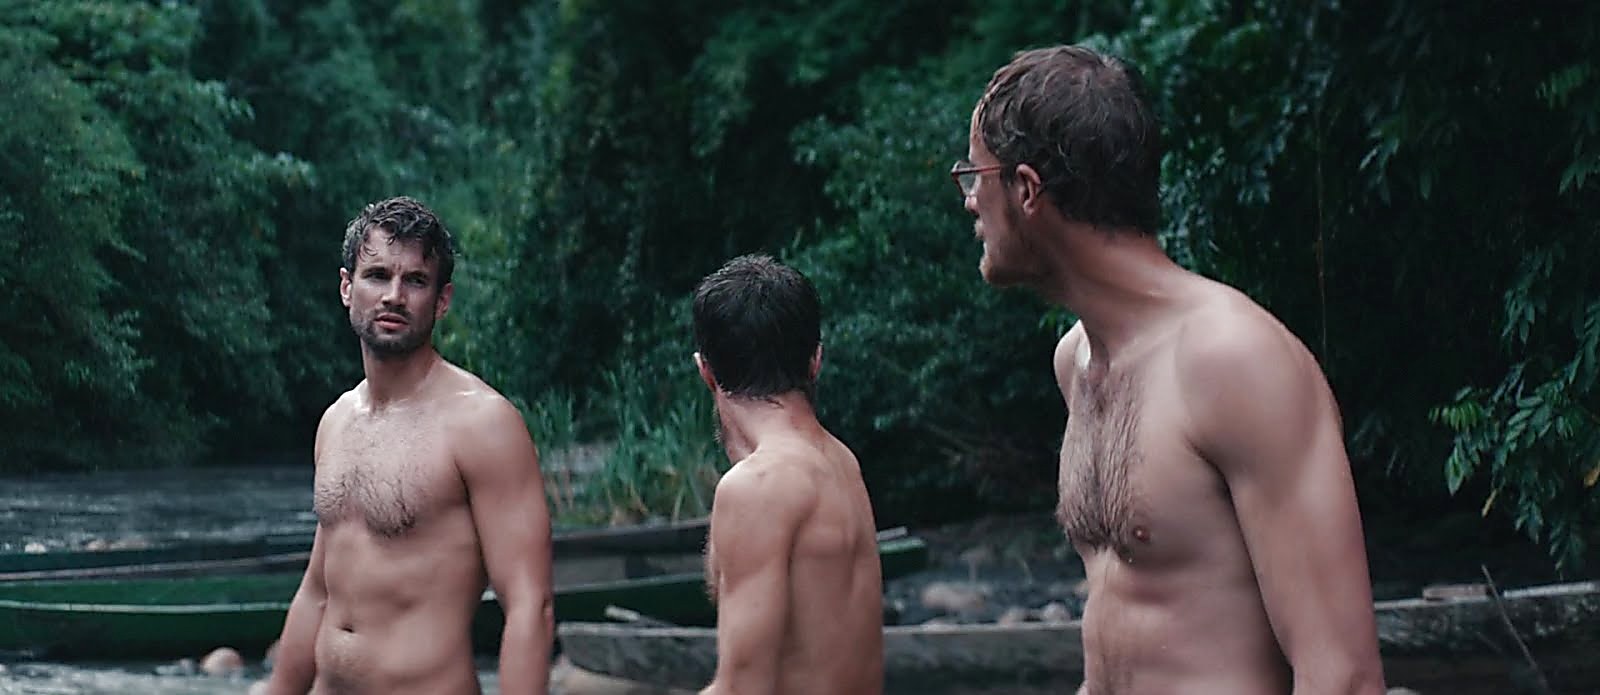 смотреть художественный фильм с голыми мужиками фото 37